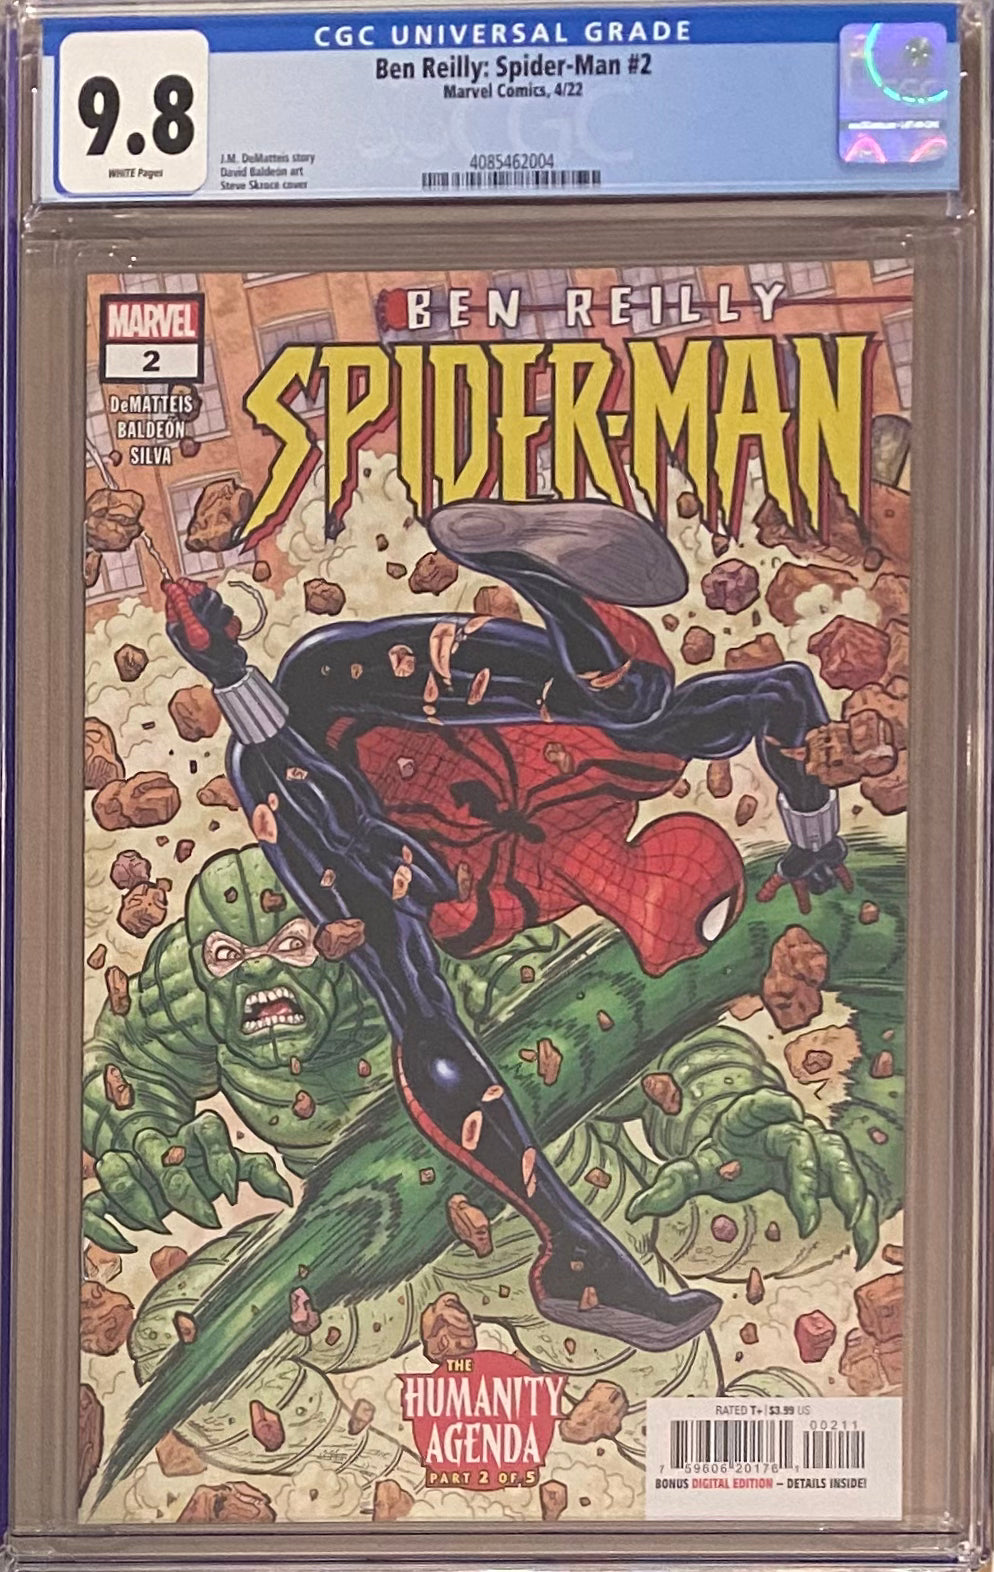 Ben Reilly: Spider-Man #2 CGC 9.8